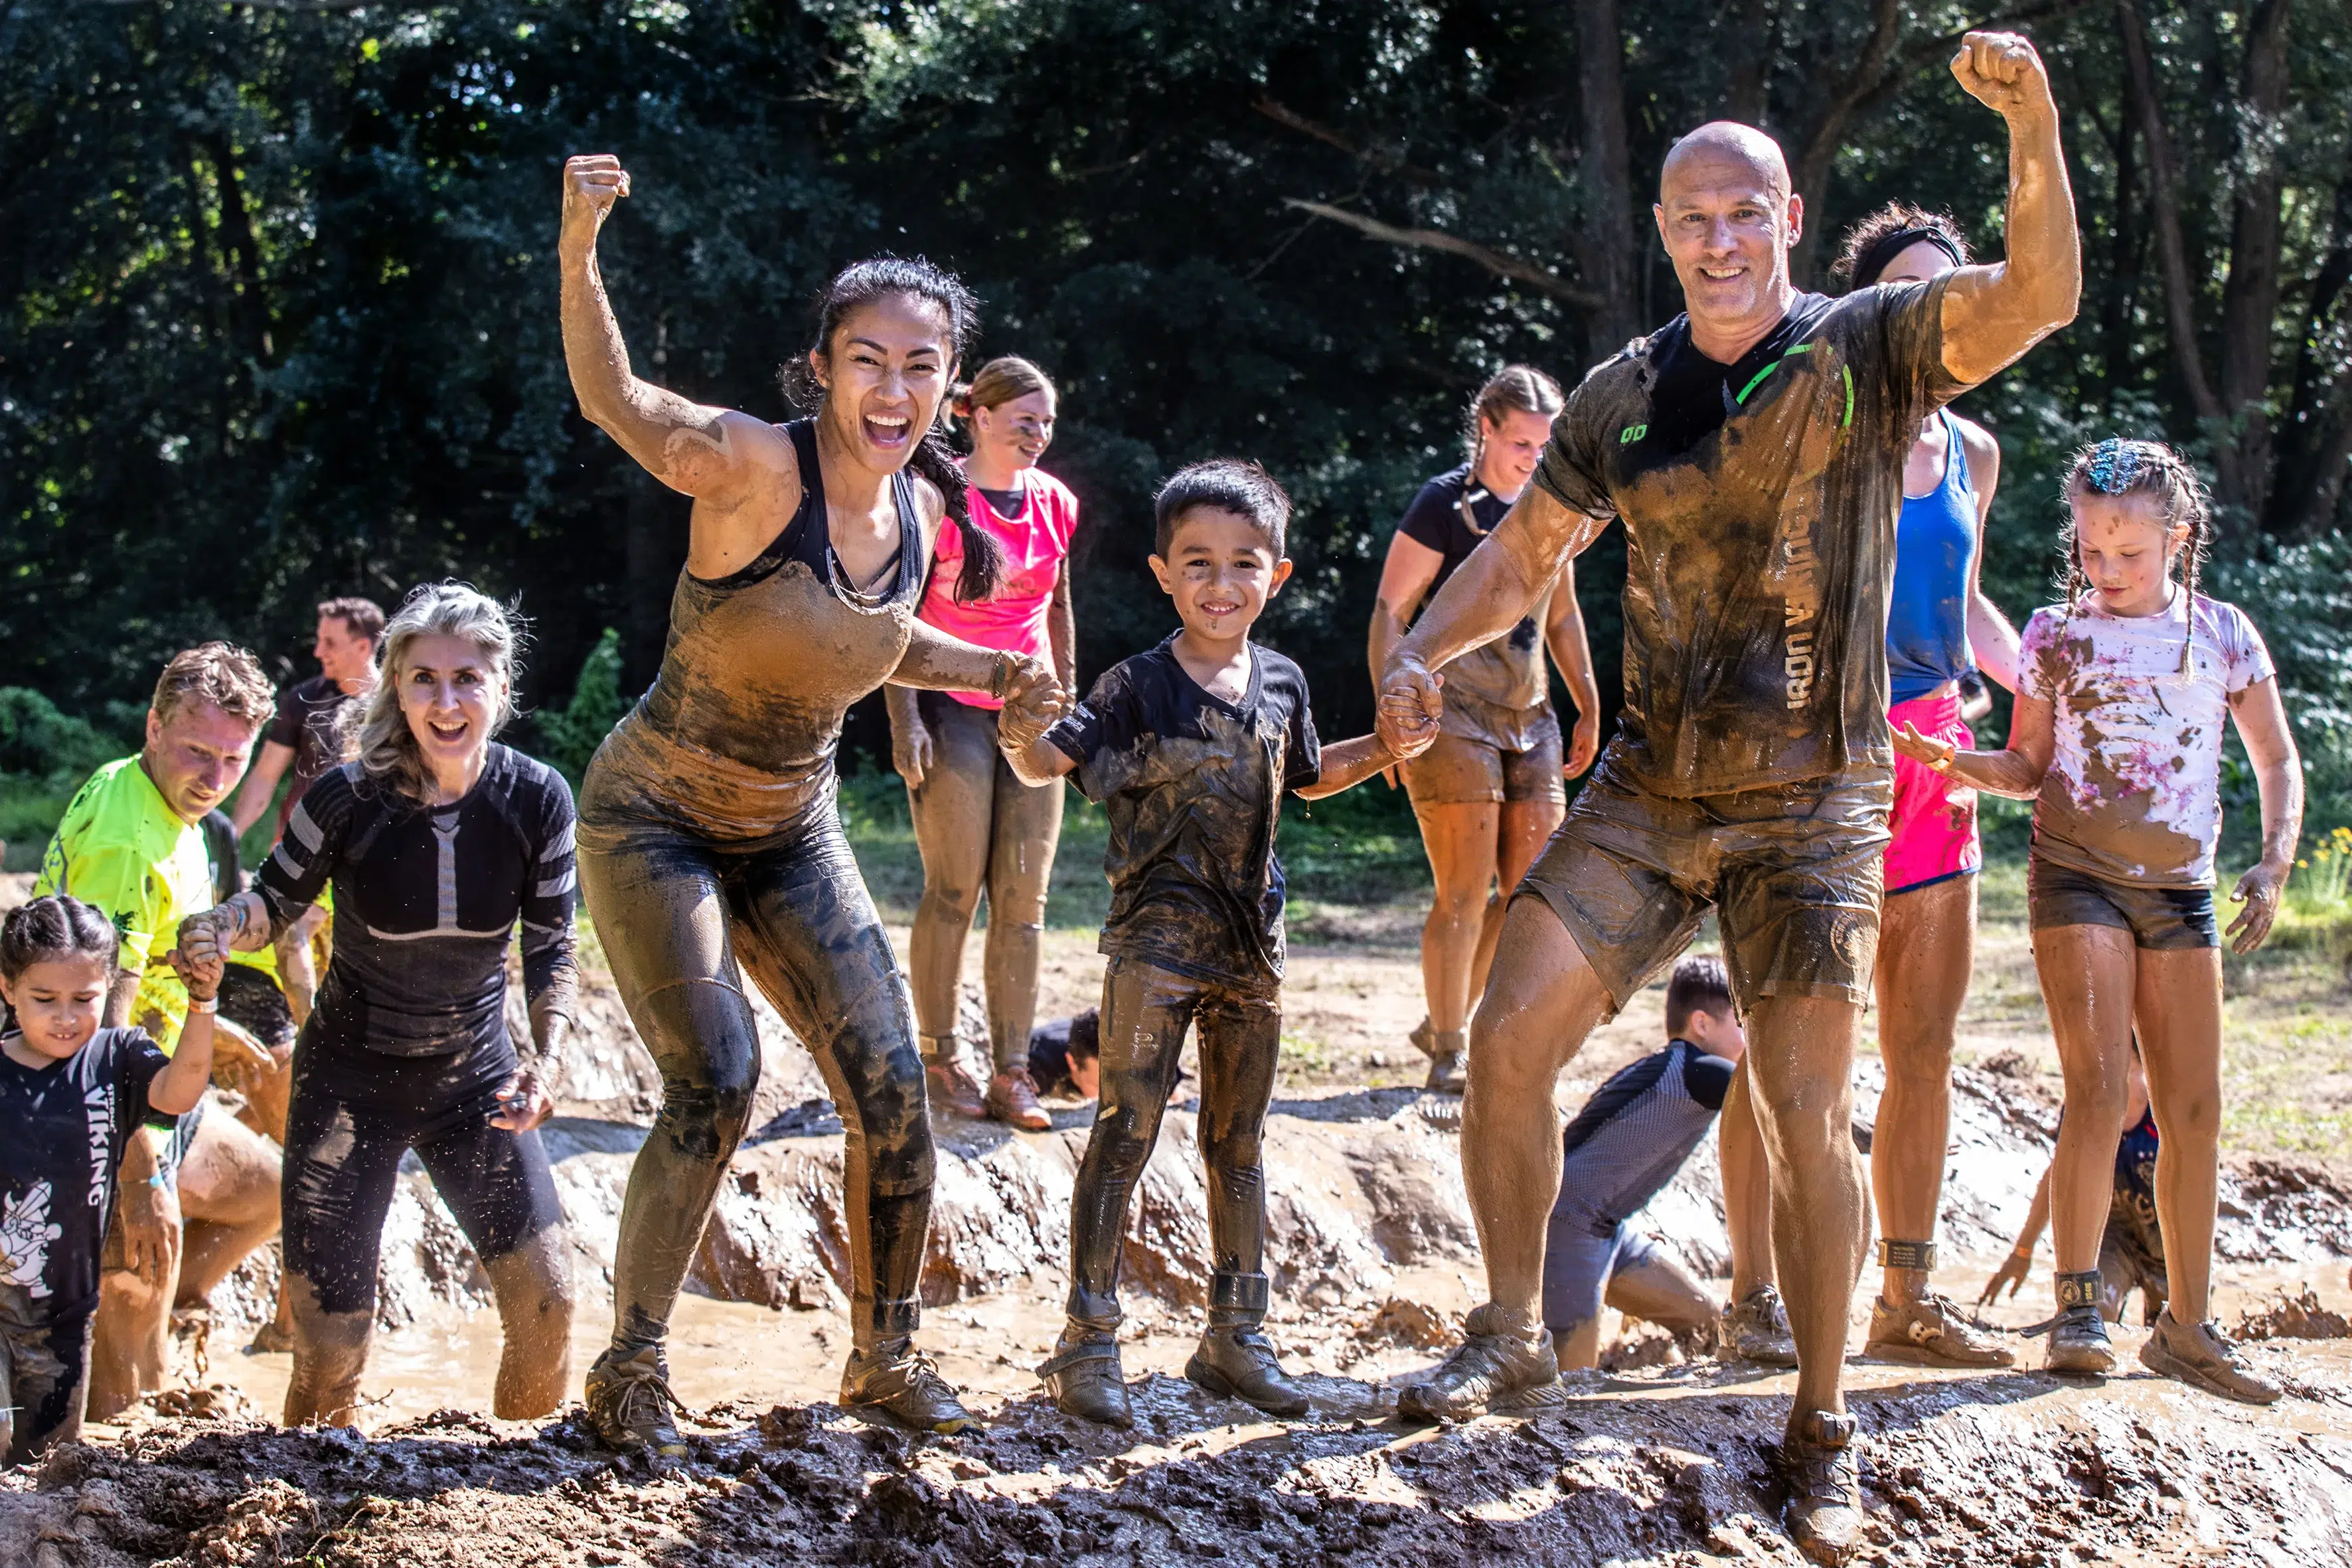 Kinderen en volwassenen die door de modder lopen en hun spierballen laten zien tijdens de Obstacle run Mud editie